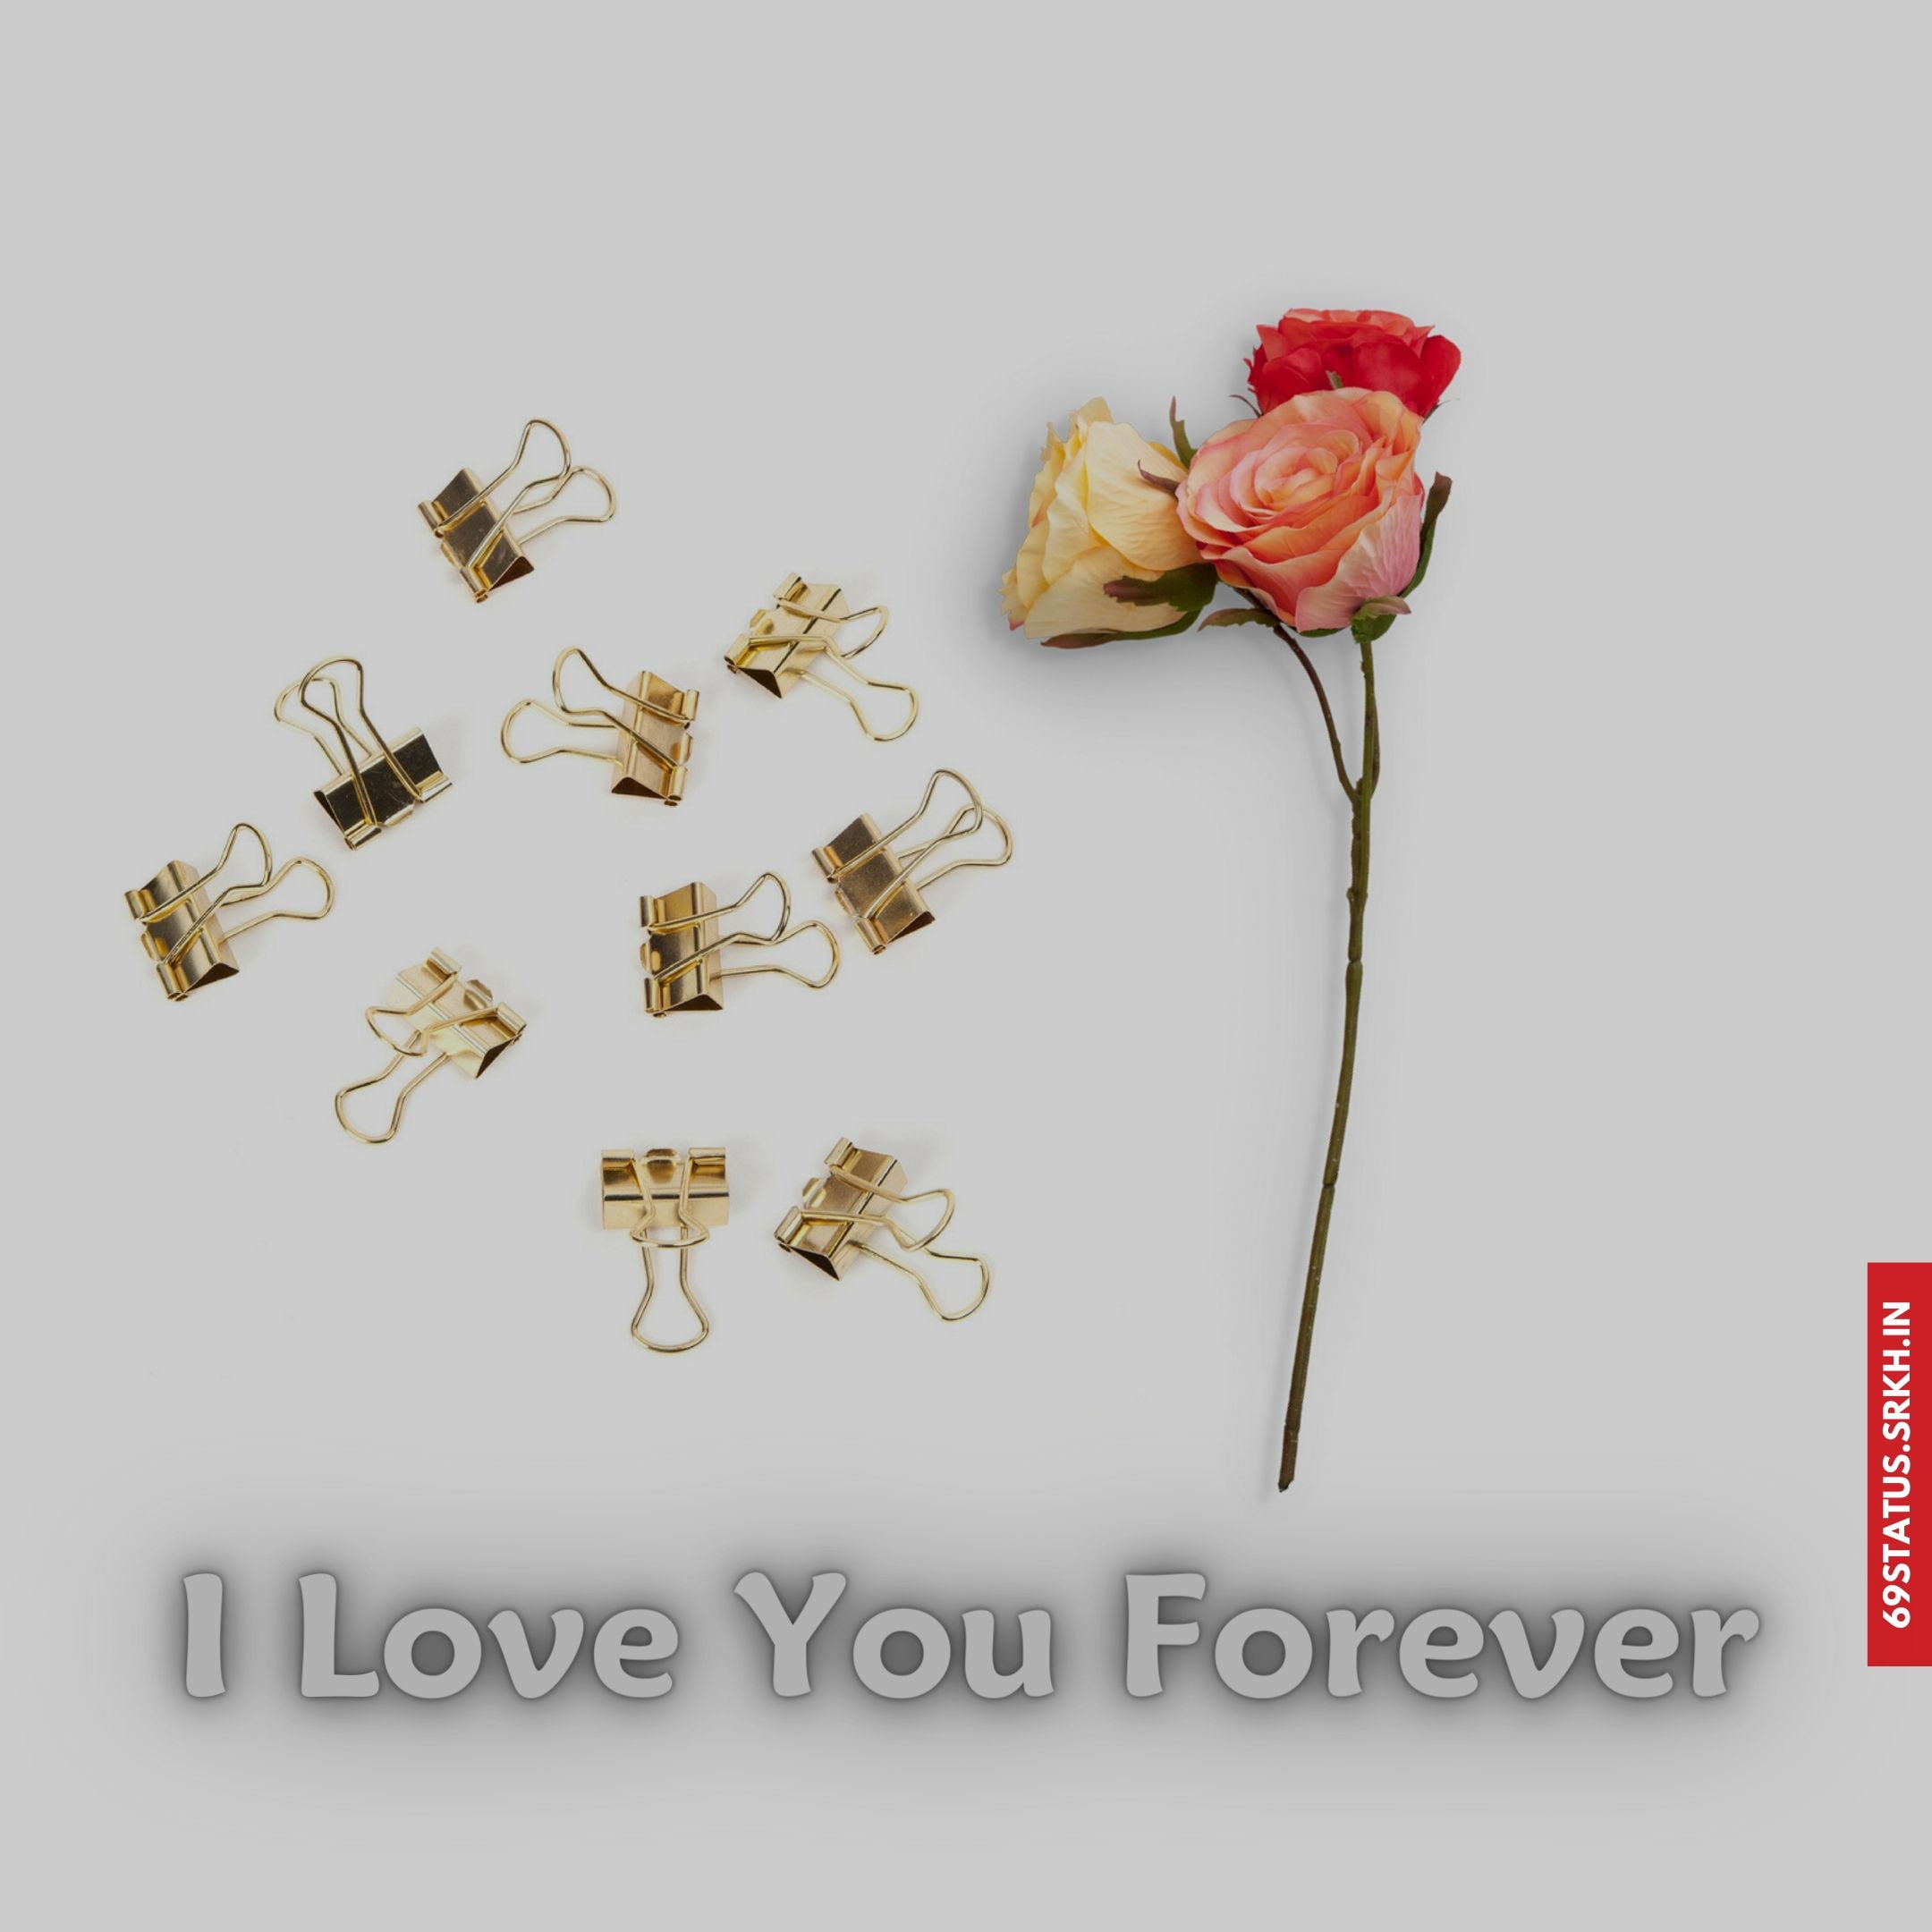 🔥 I Love You forever images Download free - Images SRkh